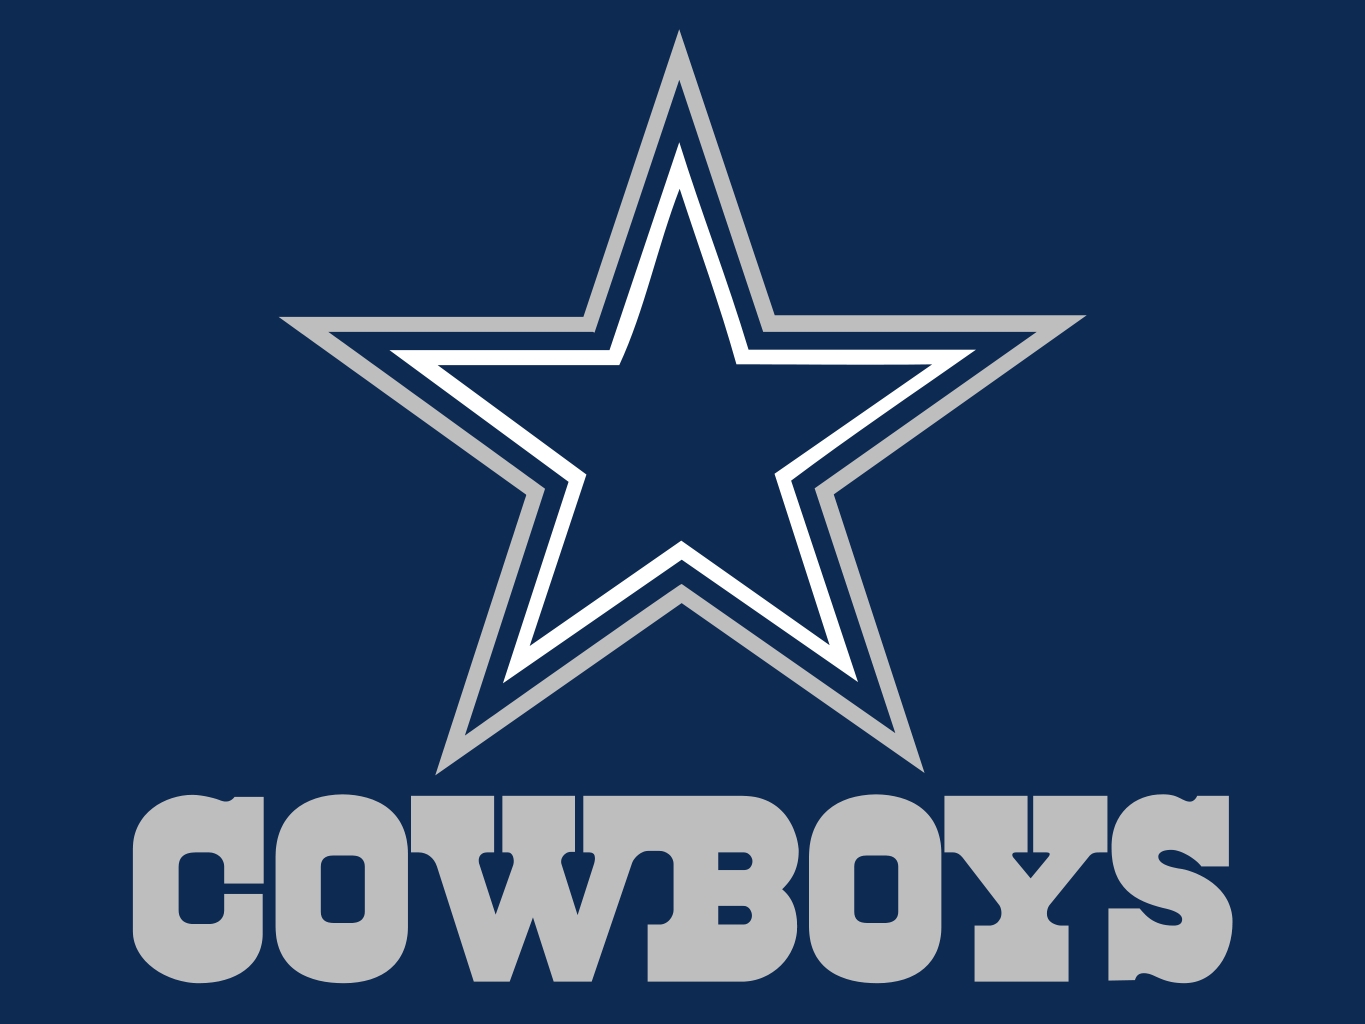 8 Dallas Cowboys Logo Vector Images Dallas Cowboys Logo, Dallas